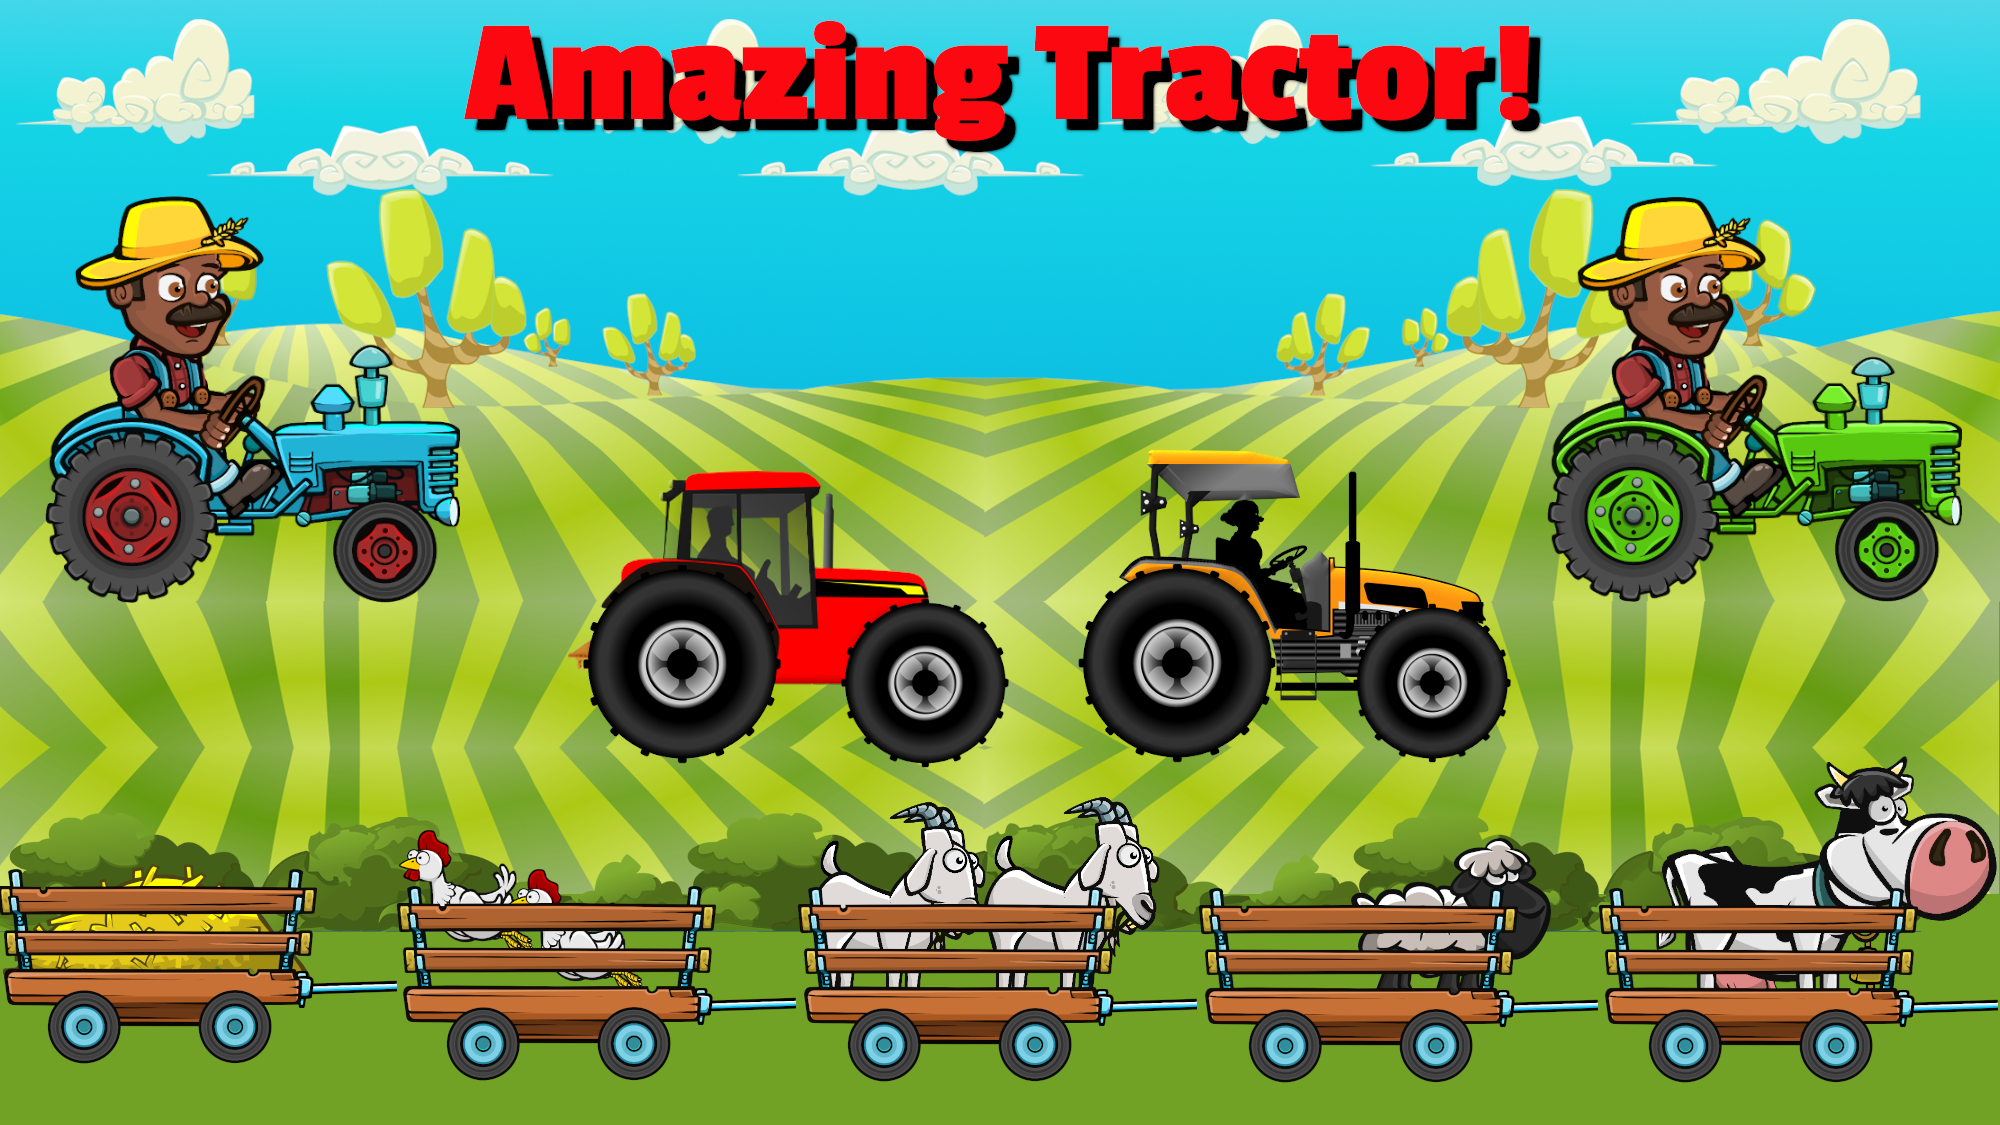 Amazing Tractor!